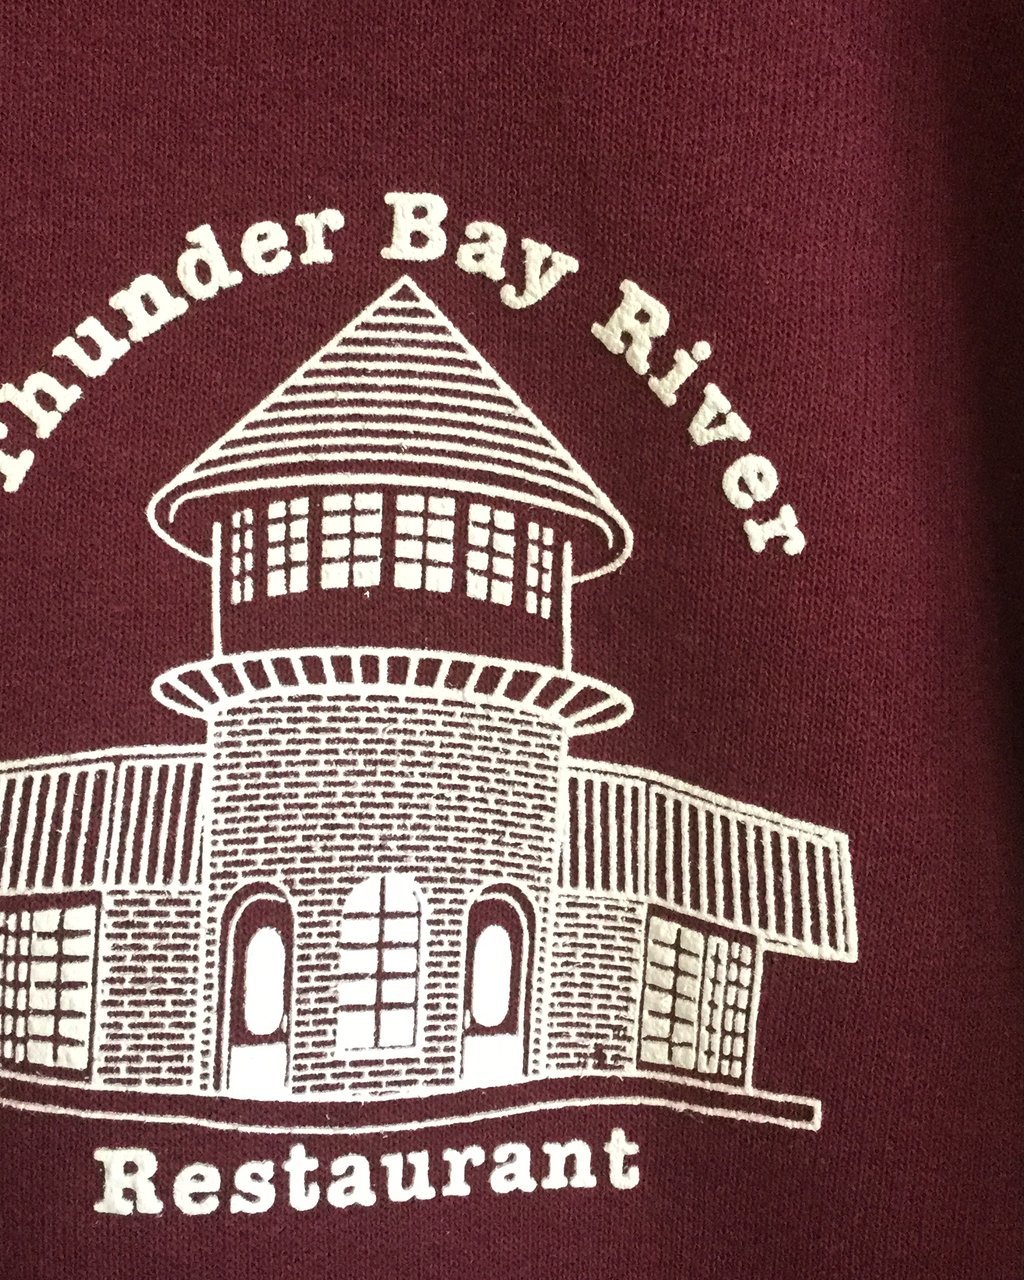 tdunder Bay River Restaurant